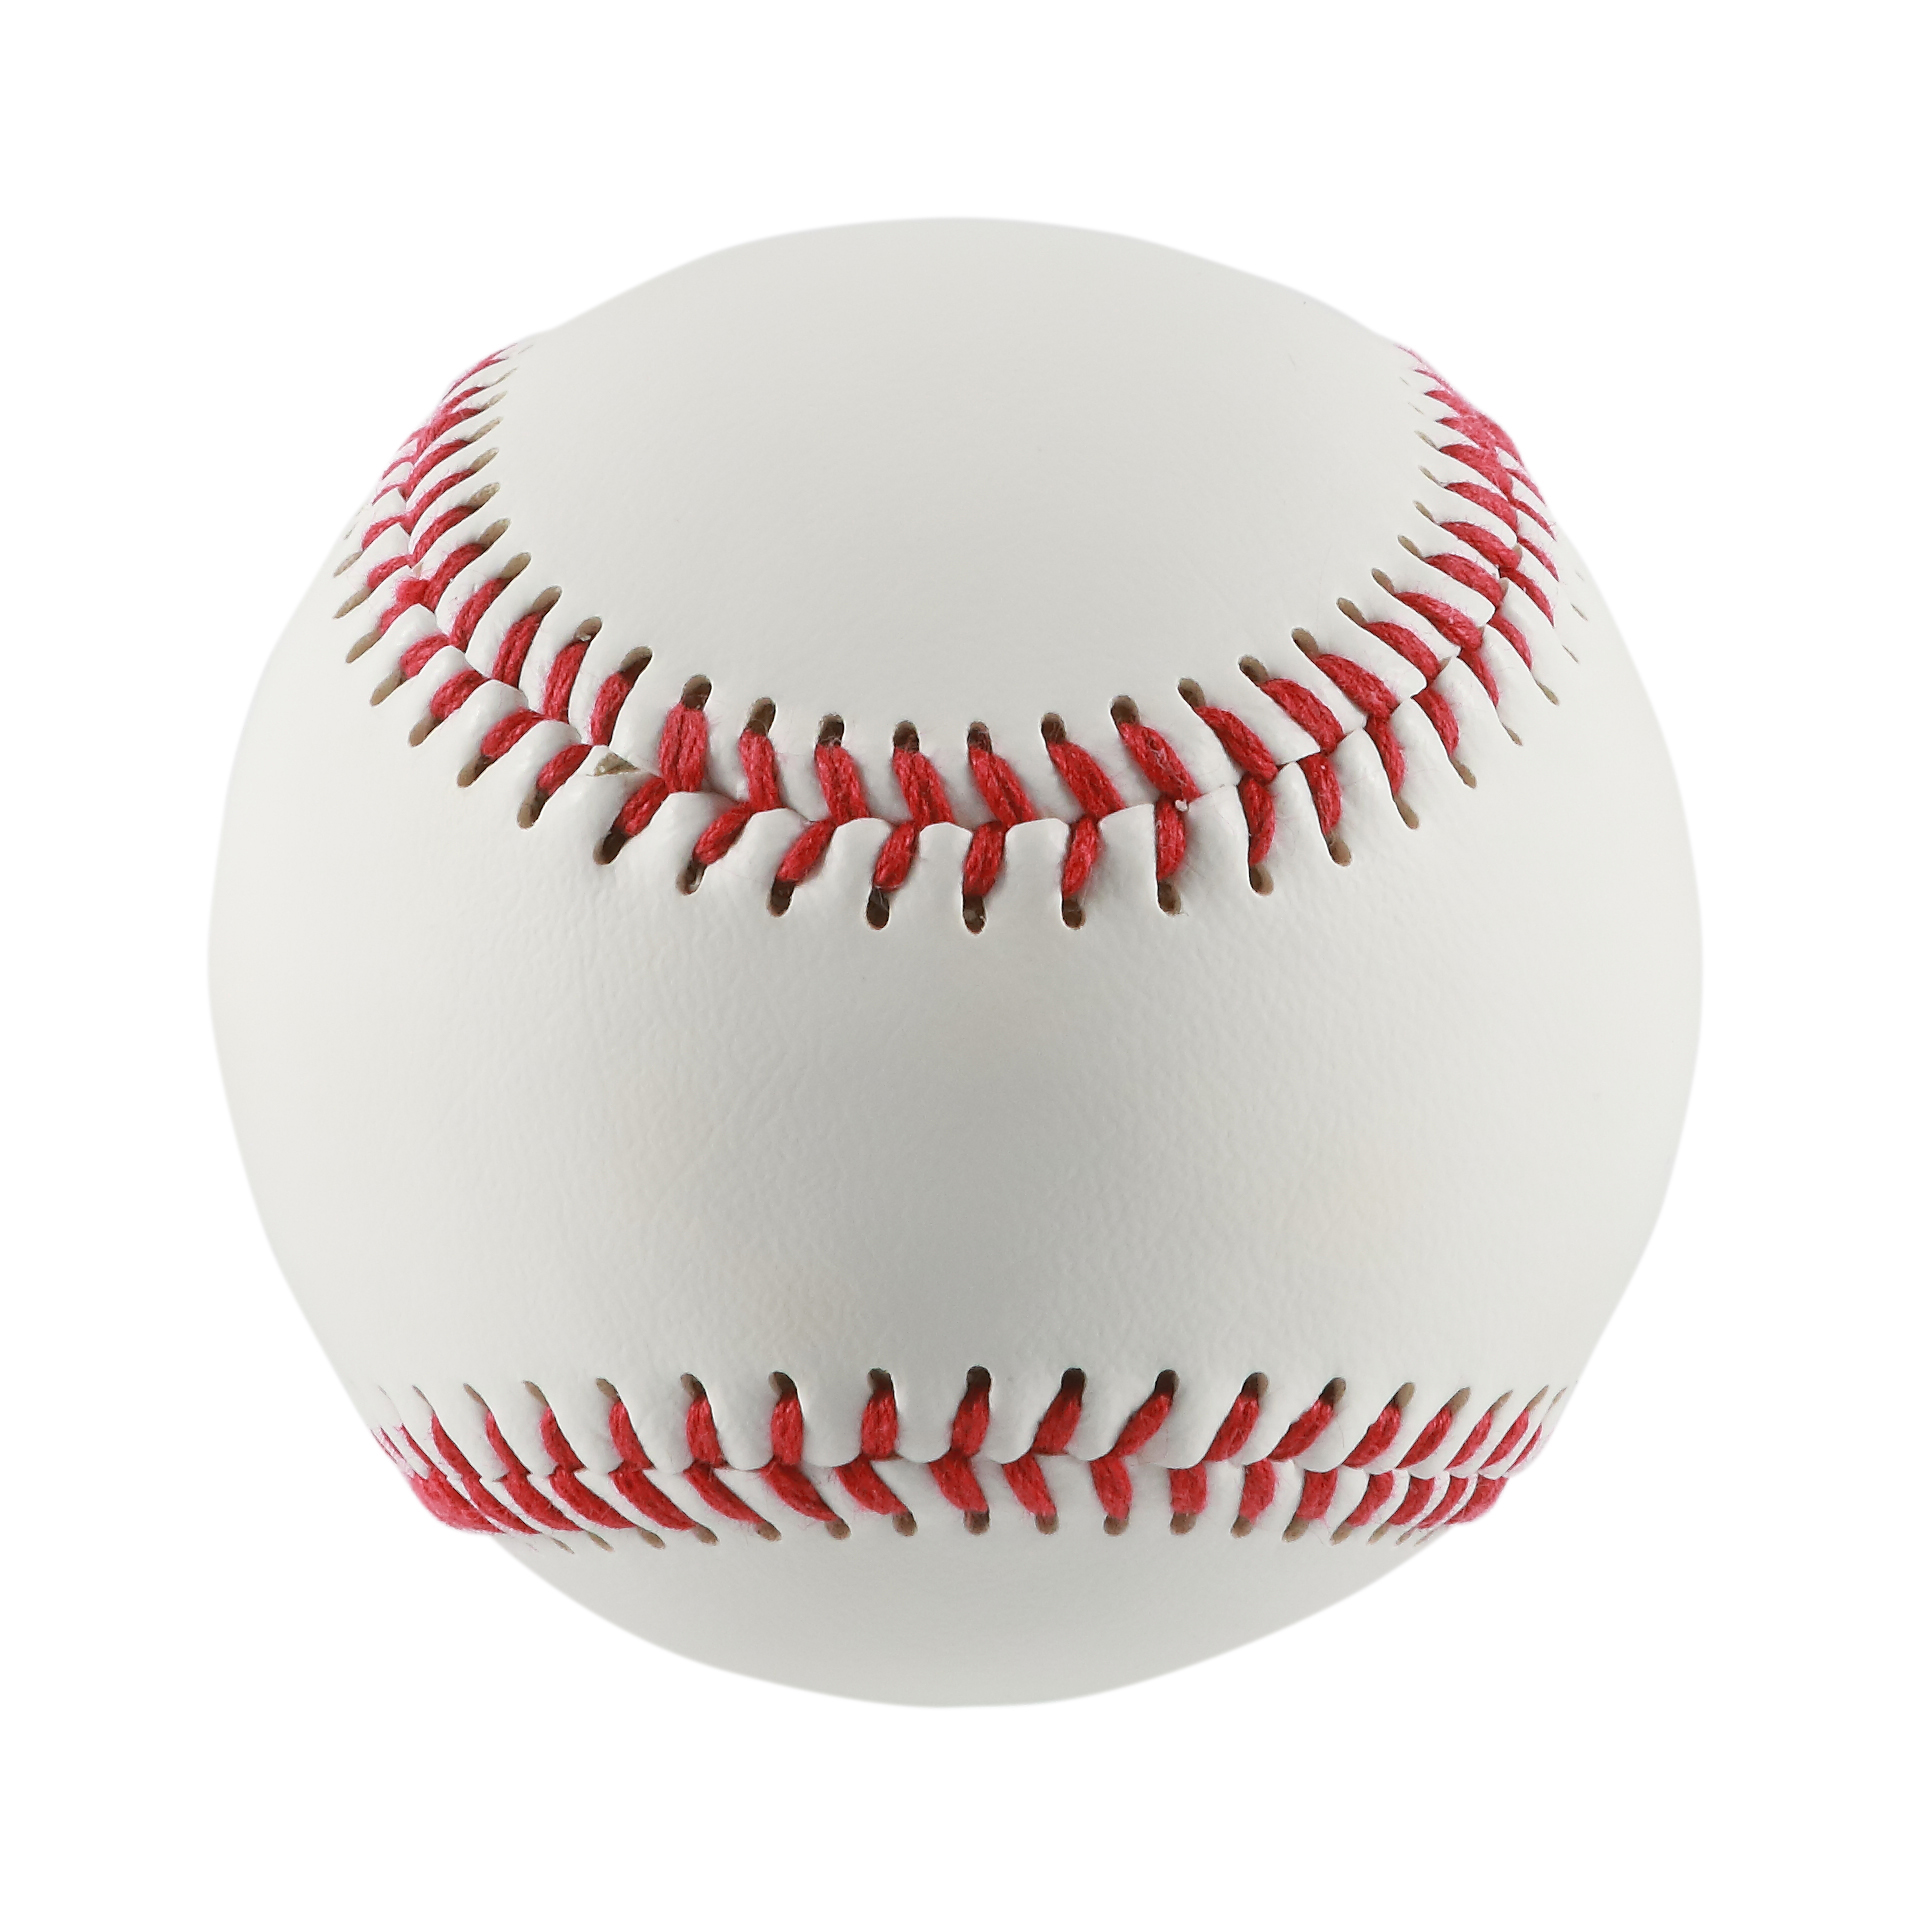 كرة بيسبول للتدريب من الجلد الصناعي مقاس 9 بوصة، بيع مباشر من المصنع